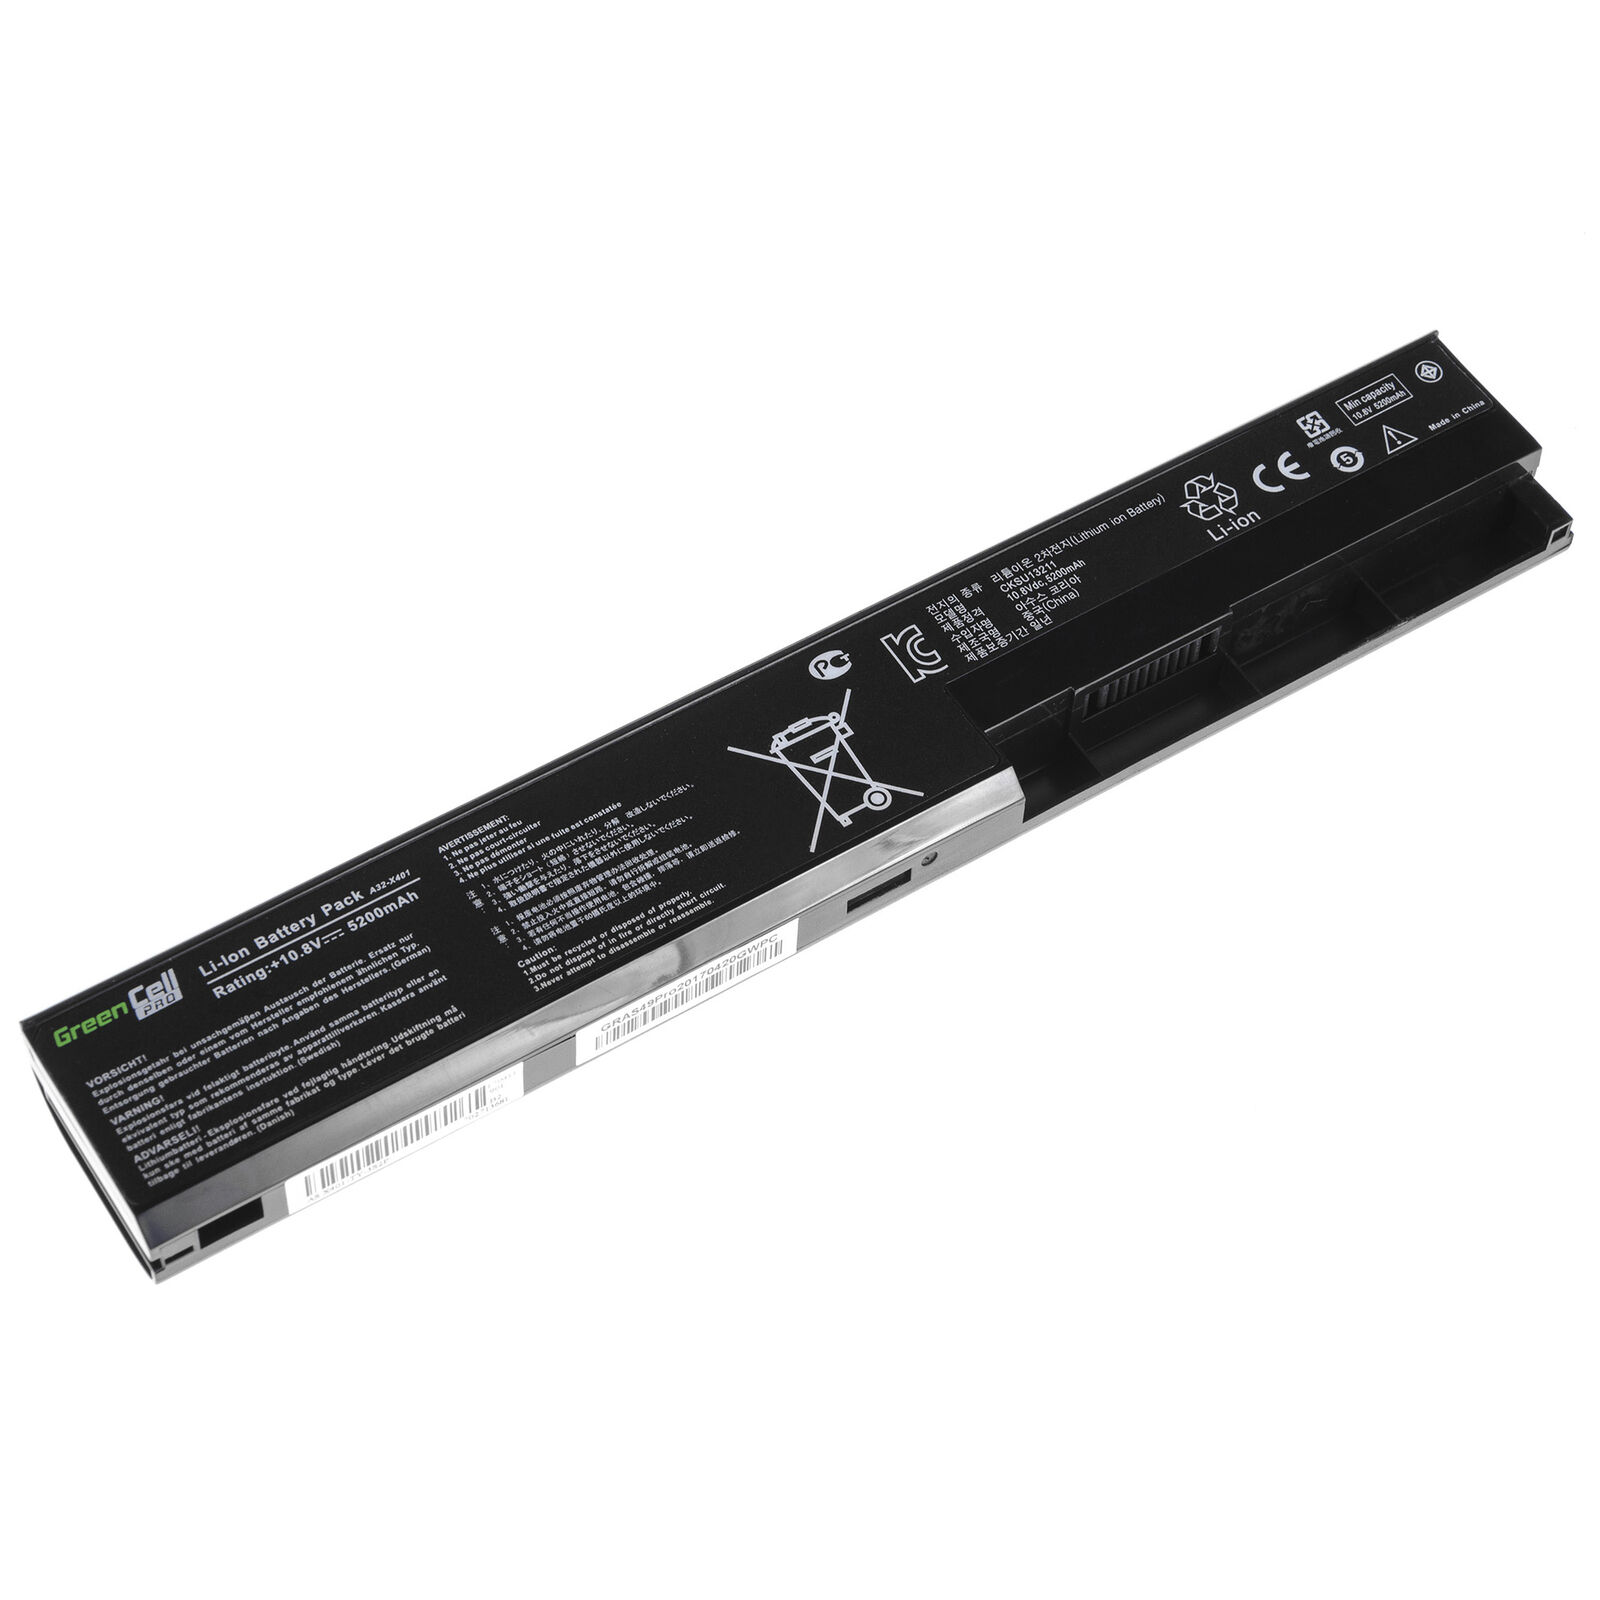 Asus F301 F401 X301 X401 X501 A31-X401 A32-X401 A41-X401 A42-X401 kompatibelt batterier